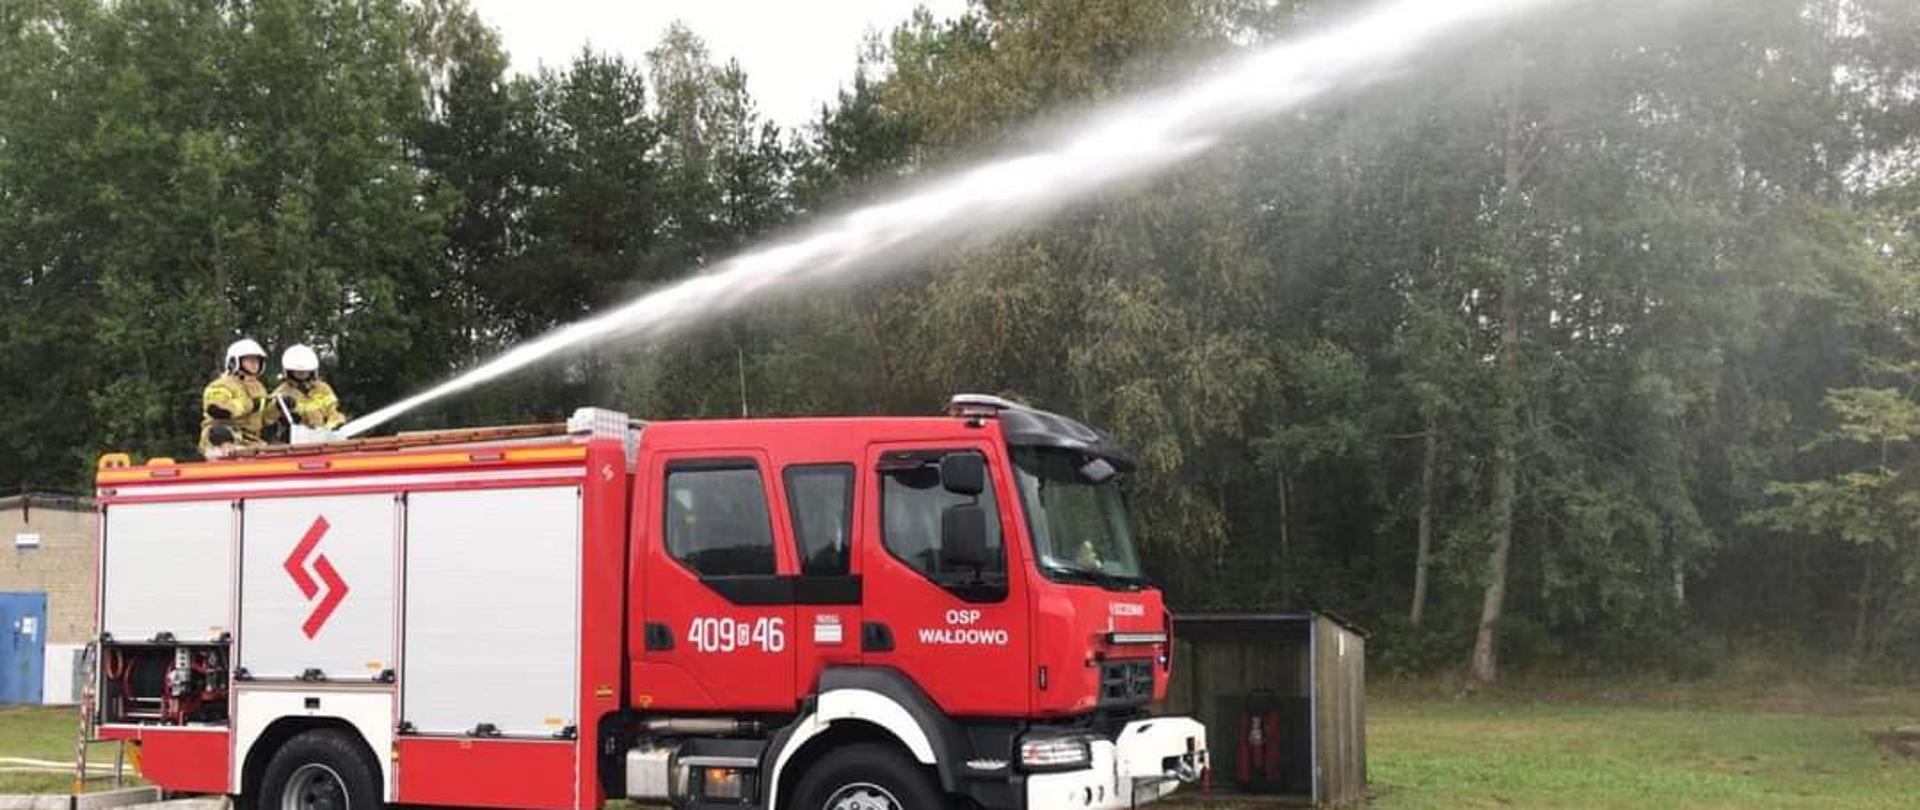 Na zdjęciu widać samochód pożarniczy podczas podawania wody z działka